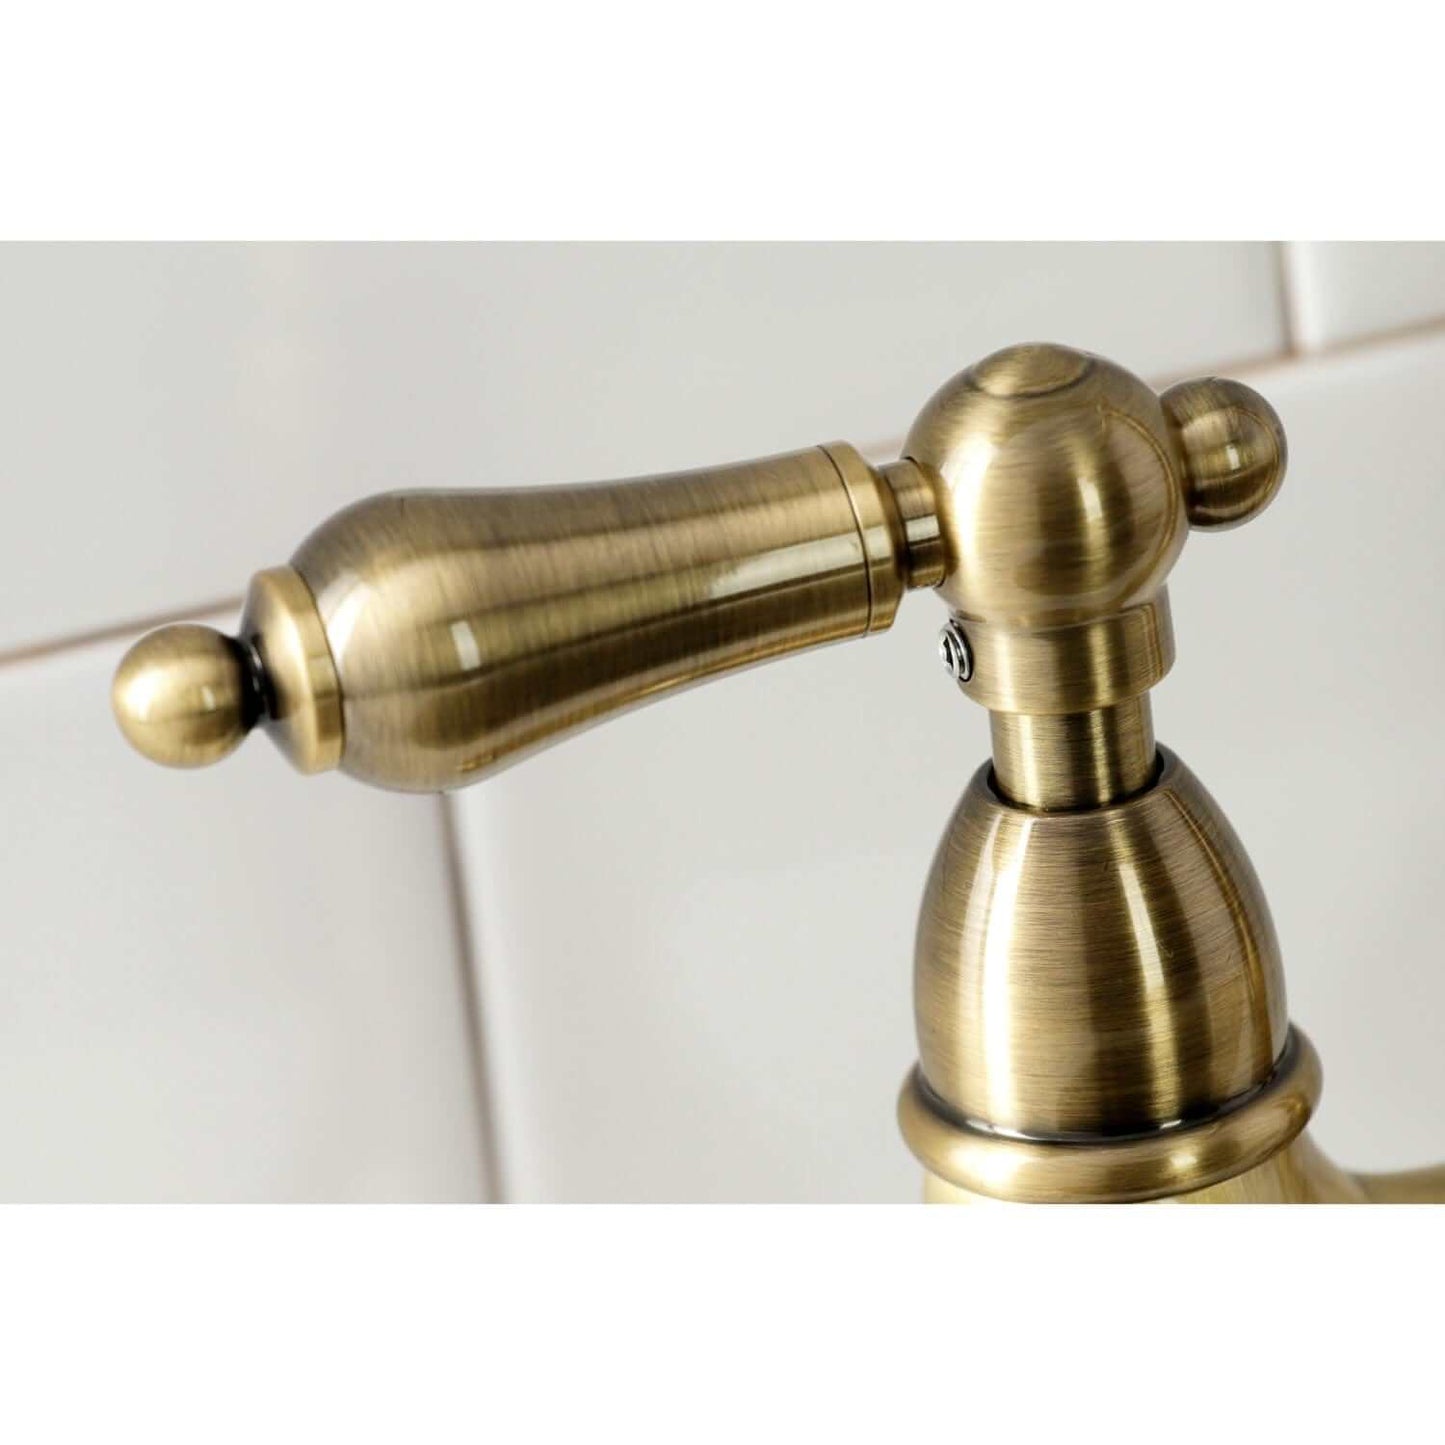 KINGSTON Brass Heritage Bridge Kitchen Faucet with Brass Sprayer - Antique Brass